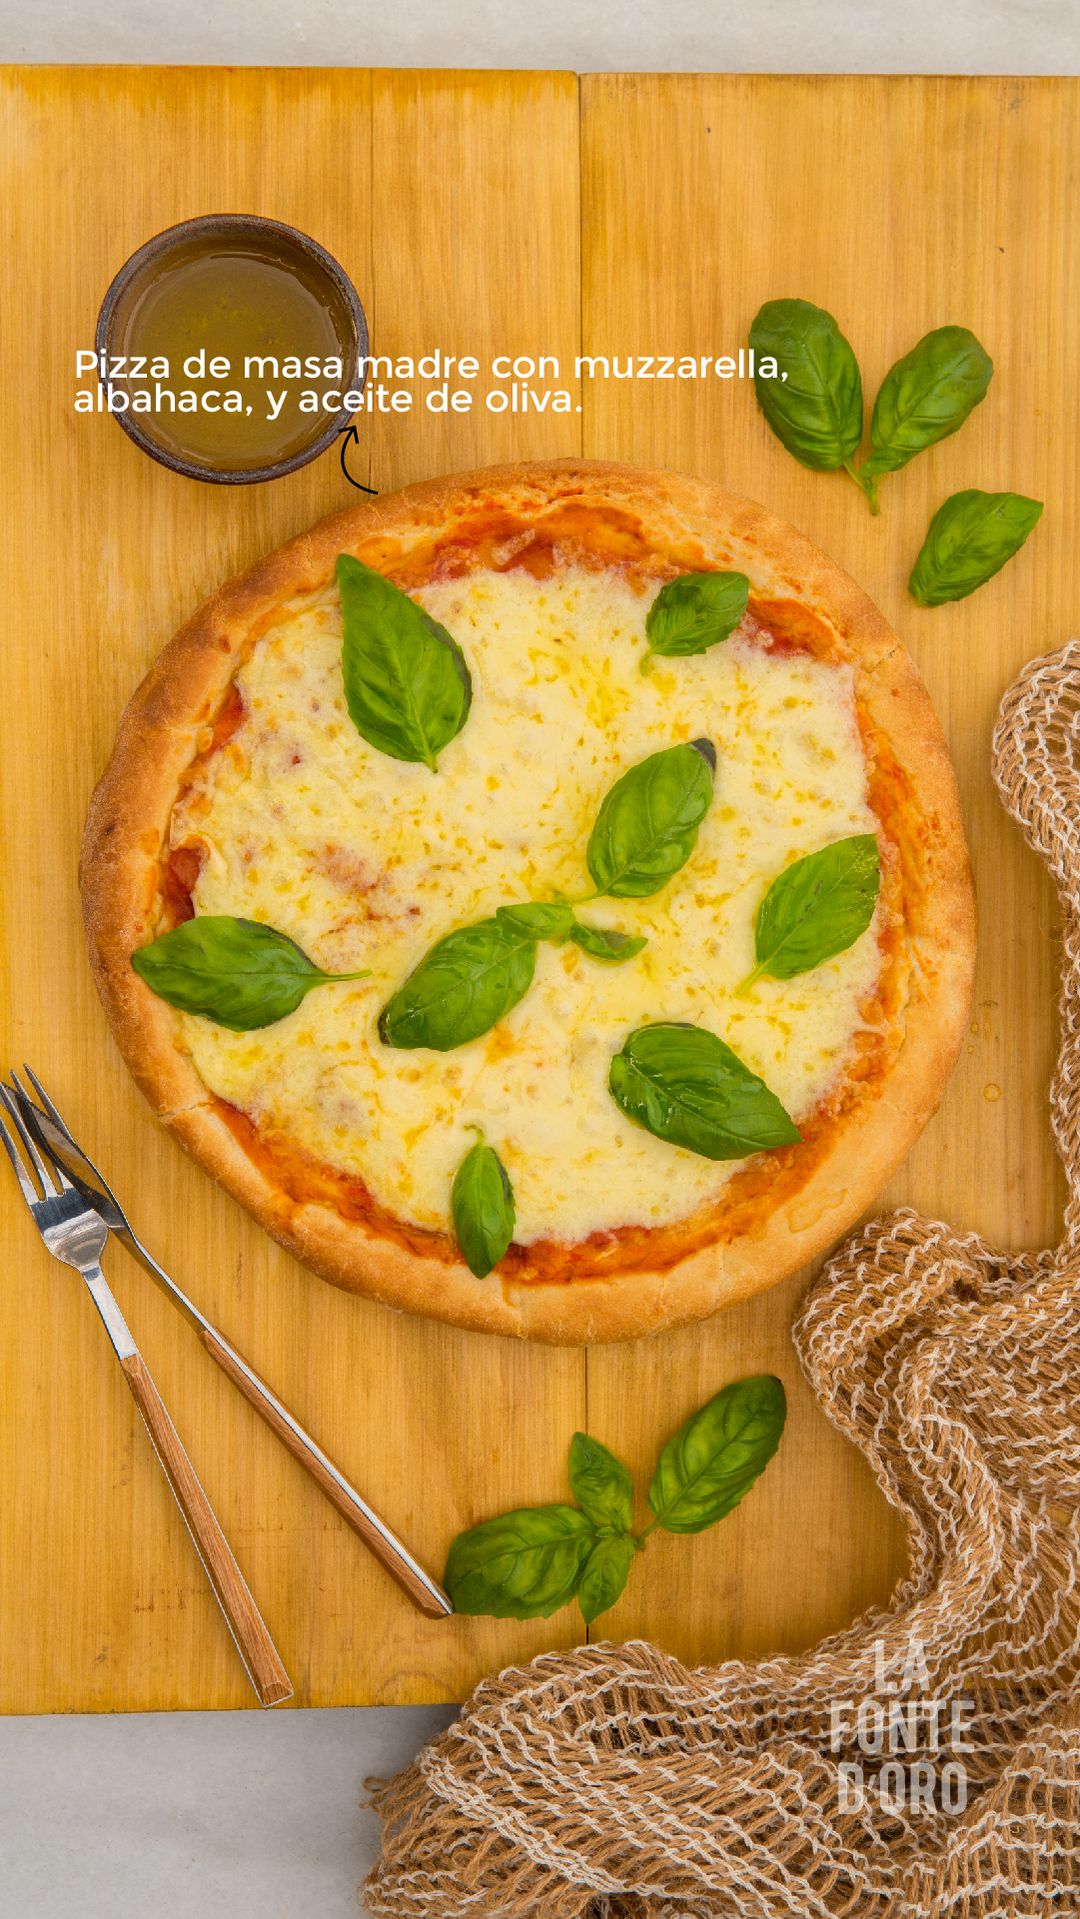 Pizza de masa madre con muzzarella, albahaca y aceite de oliva.